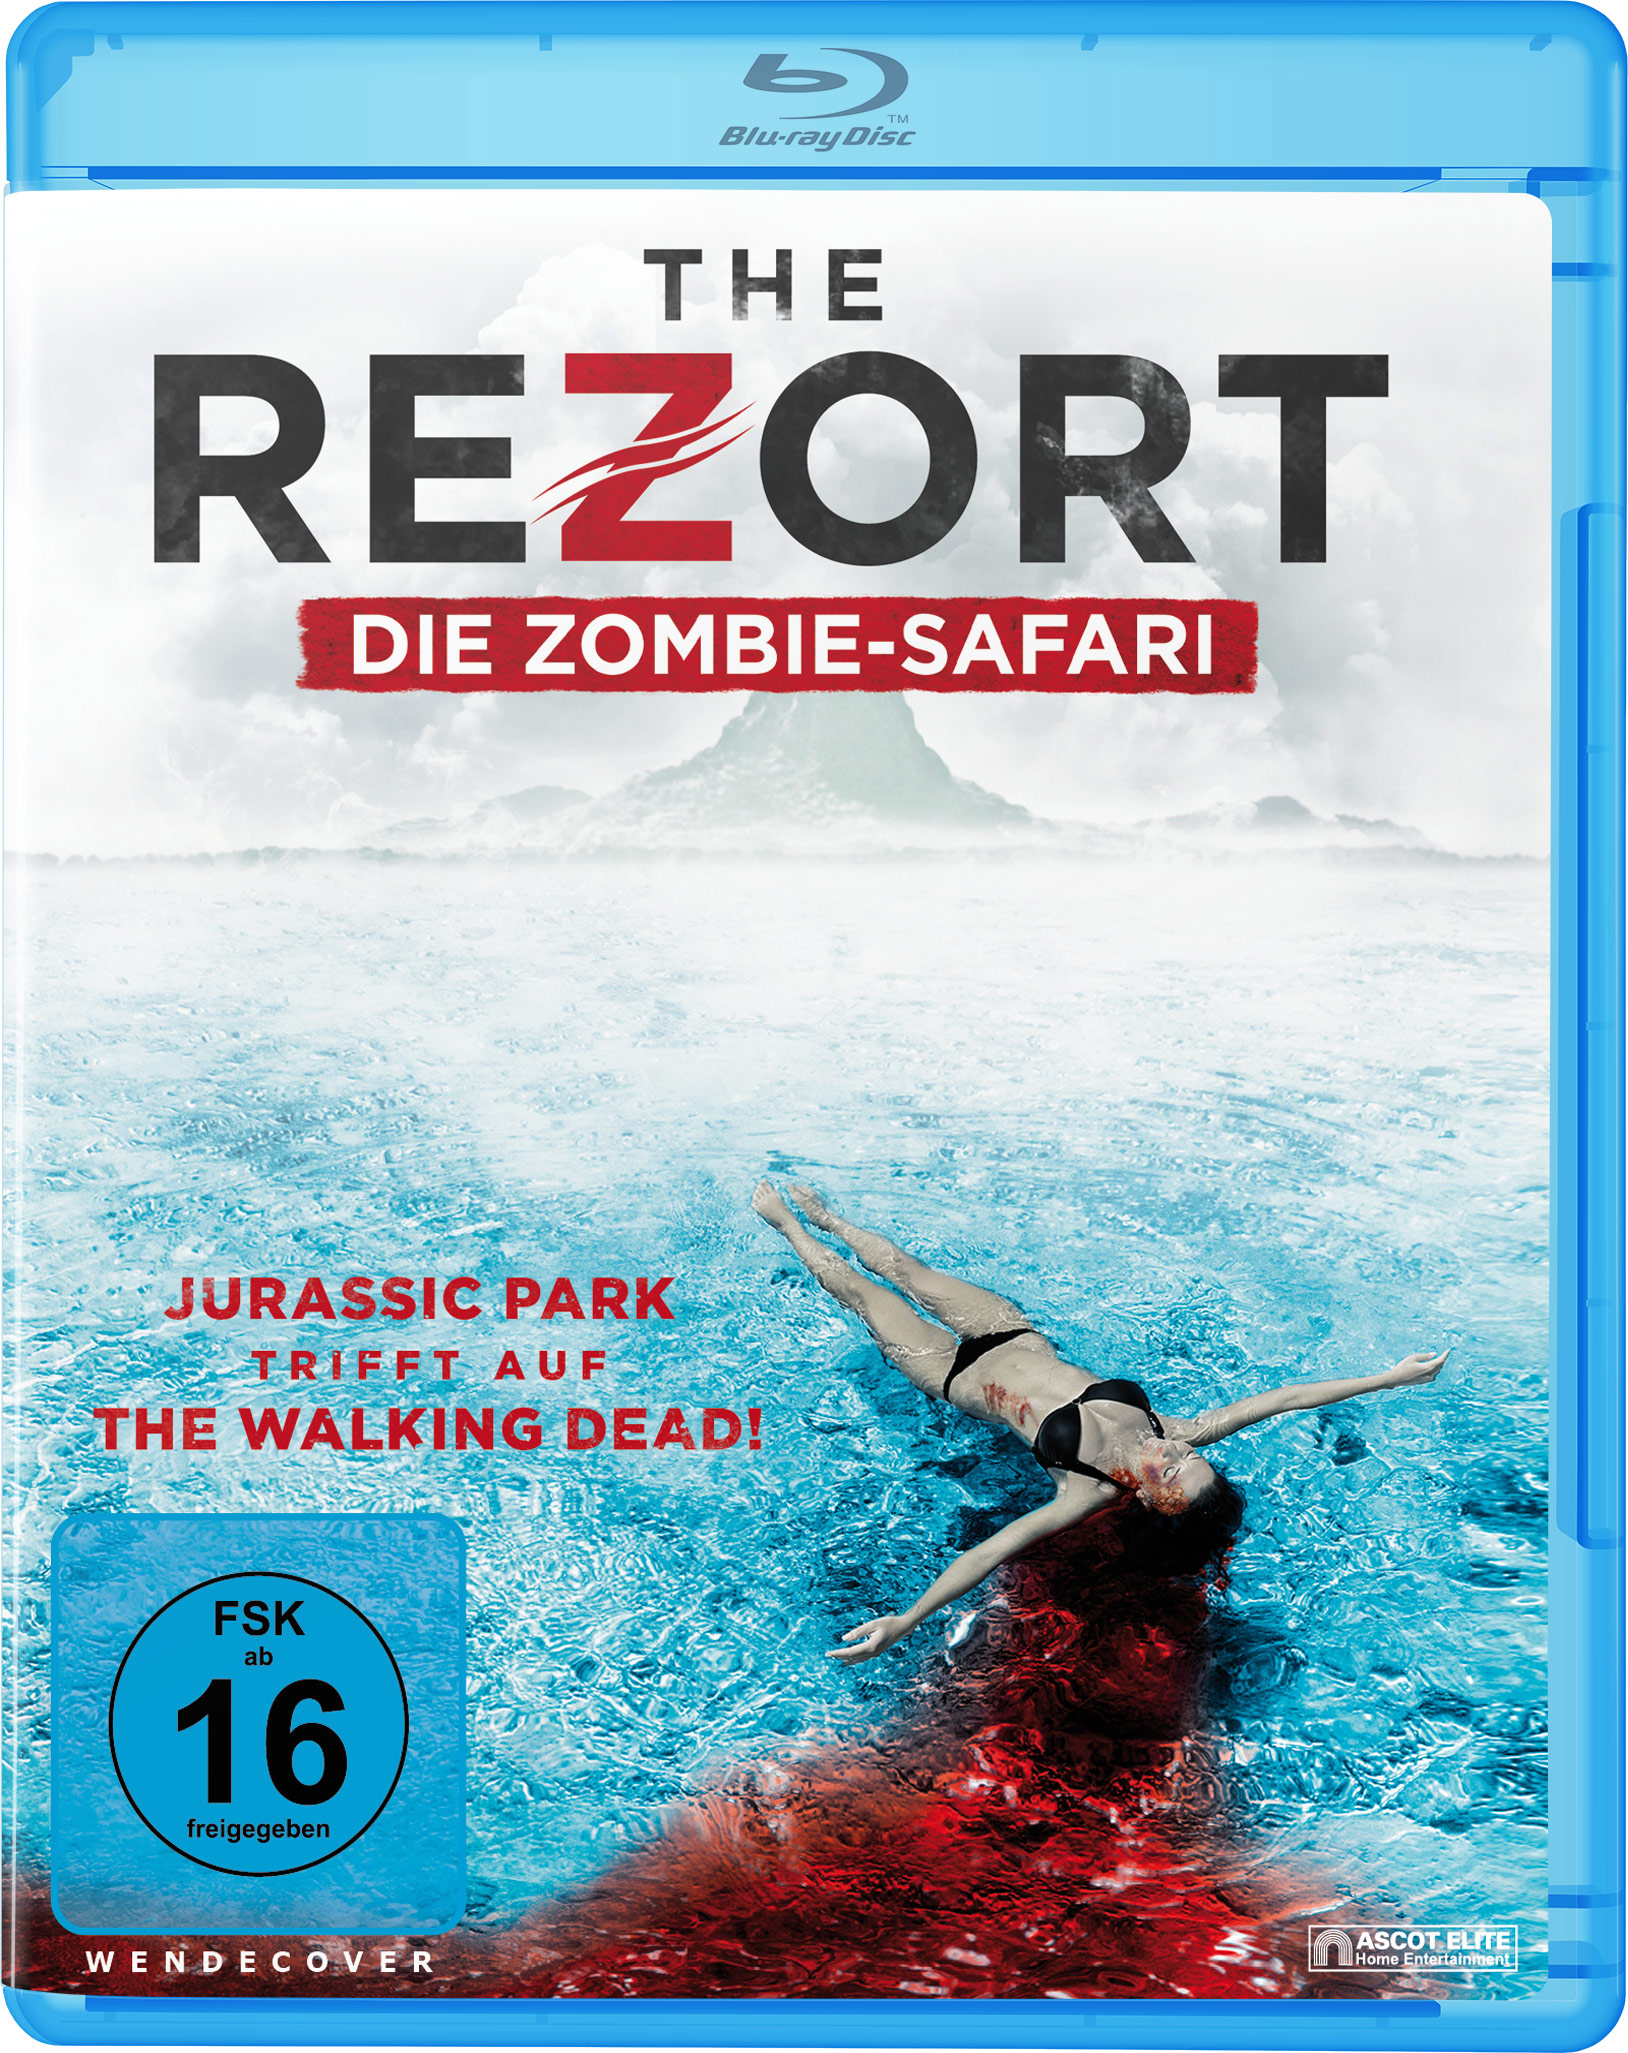 The Rezort - Safari Zombie Blu-ray Die